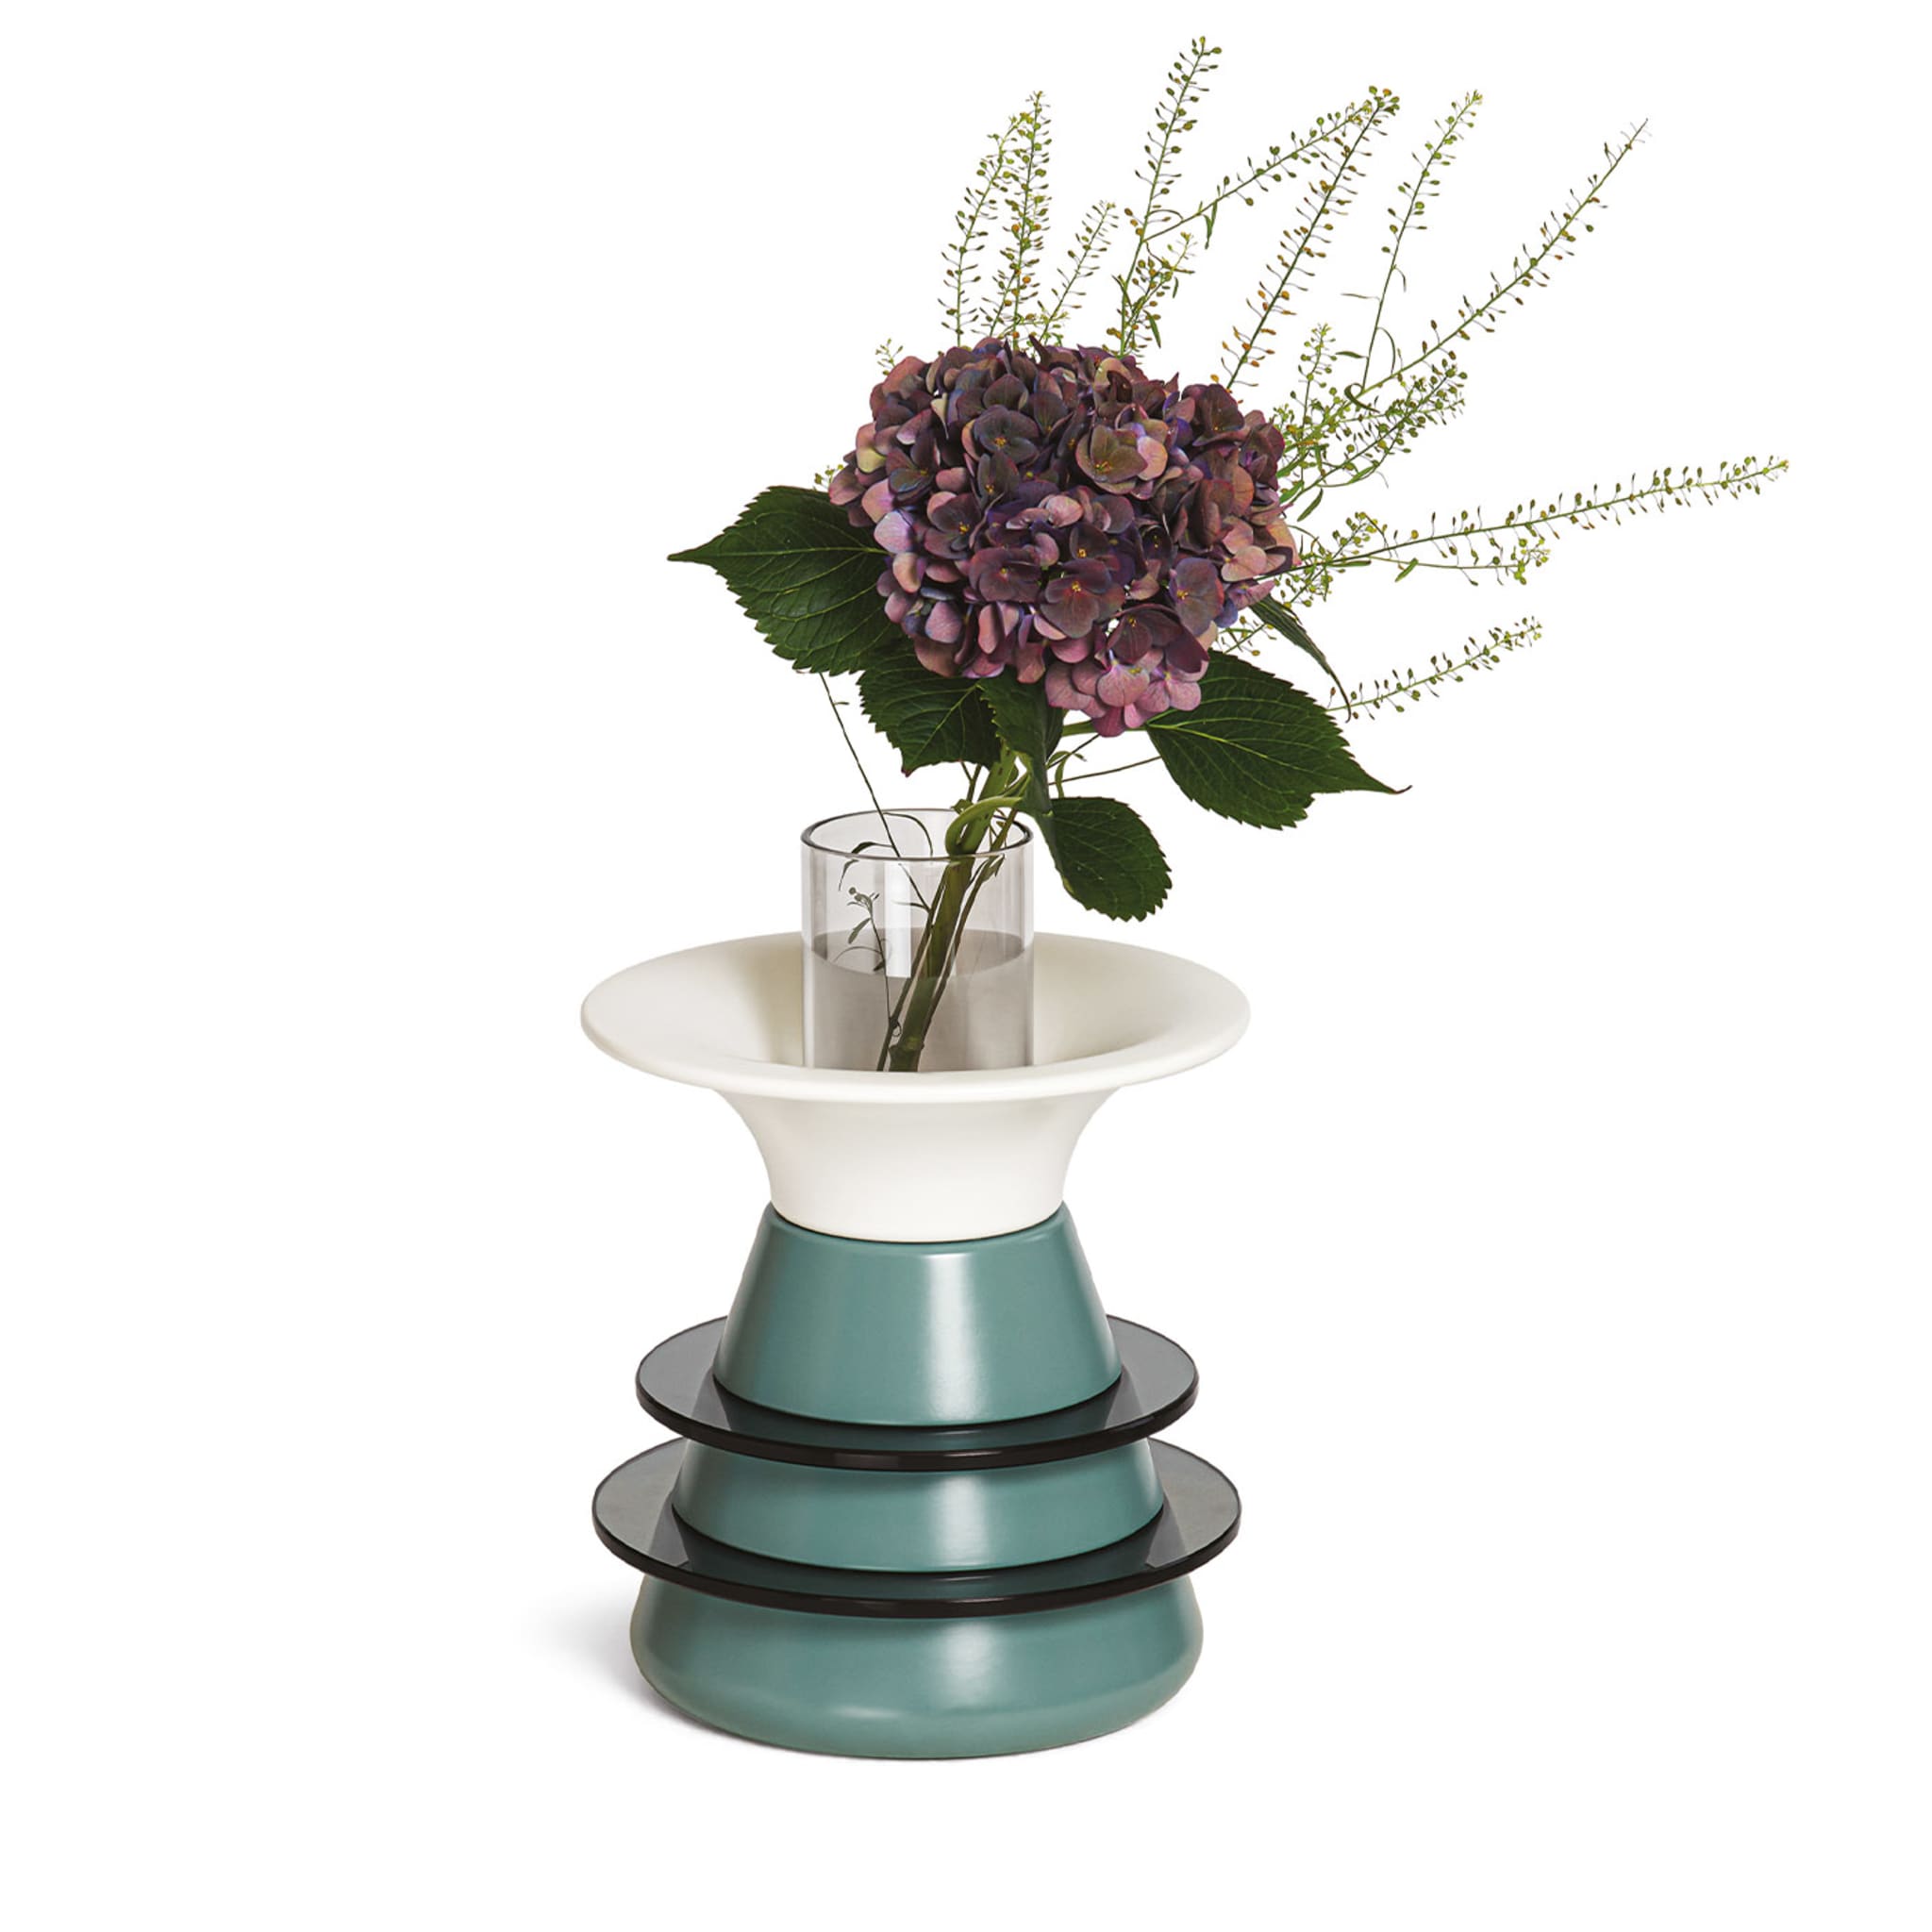 Catodo Green Vase - Alternative view 1